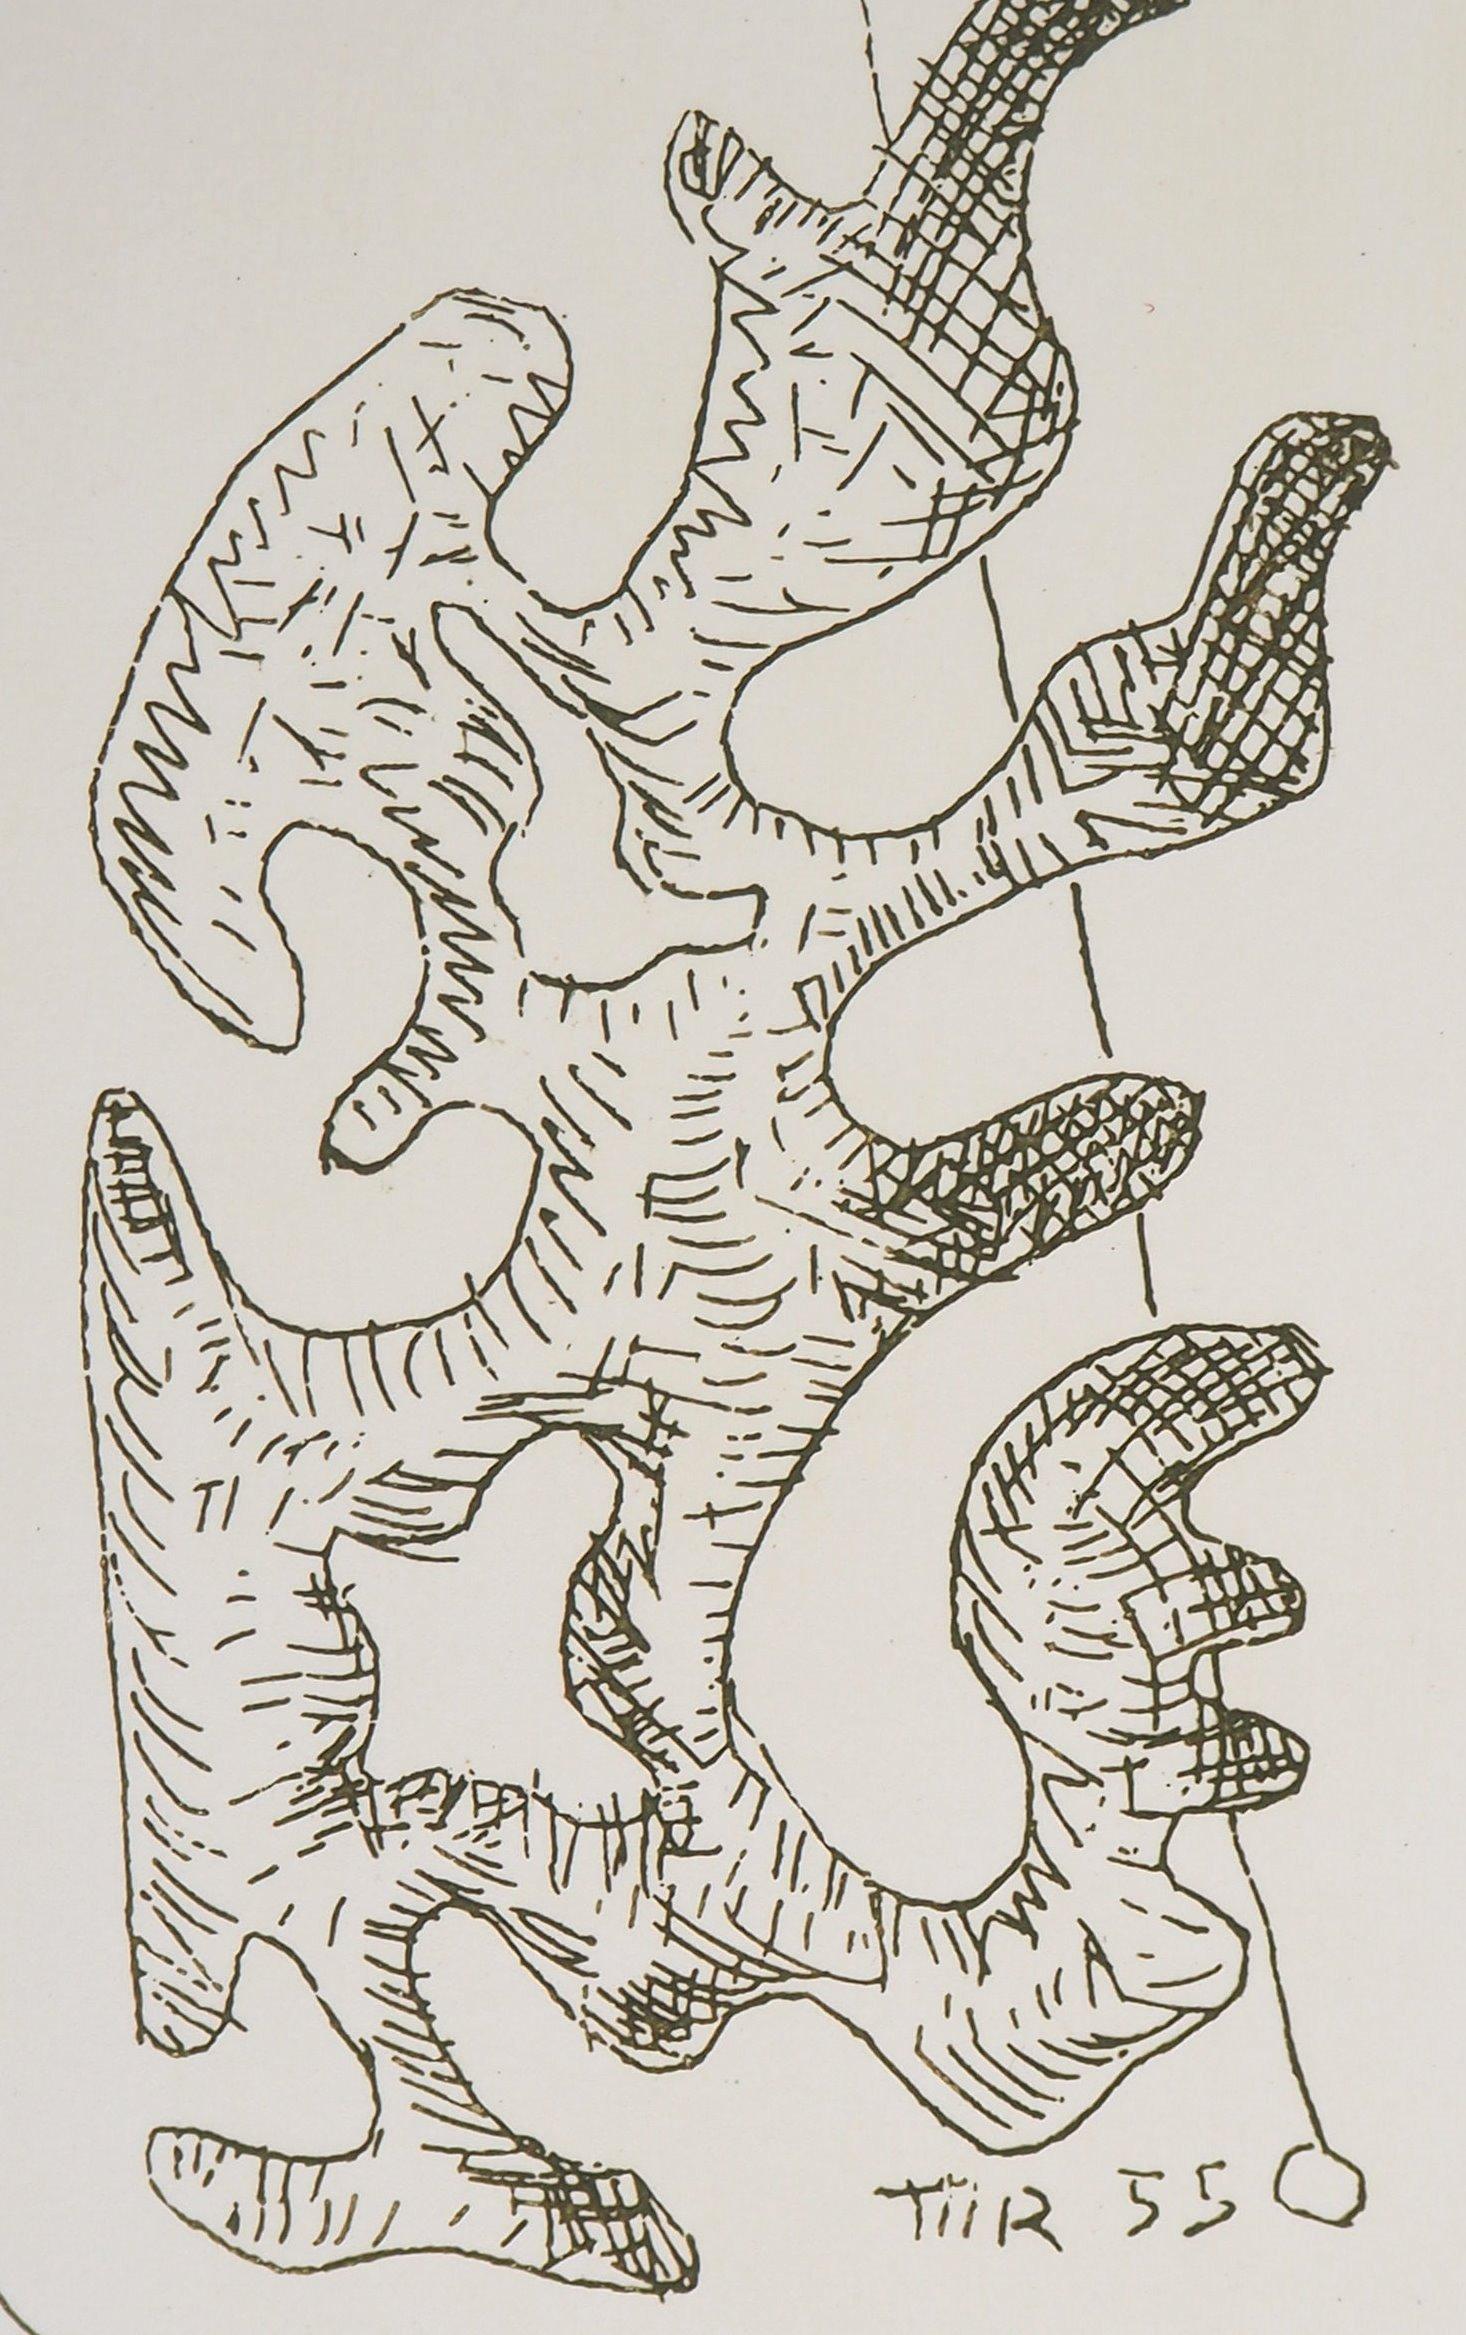 Man Ray (Emmanuel Radnitsky, alias)
Surrealistische Figur, 1969

Handsignierte Original-Radierung 
Auch gedruckte Unterschrift in der Platte
Auf Pergament, 23 x 17 cm (ca. 9 x 6,6 inch)
Nummeriert /50 Exemplare

INFORMATIONEN :  Diese Radierung ist